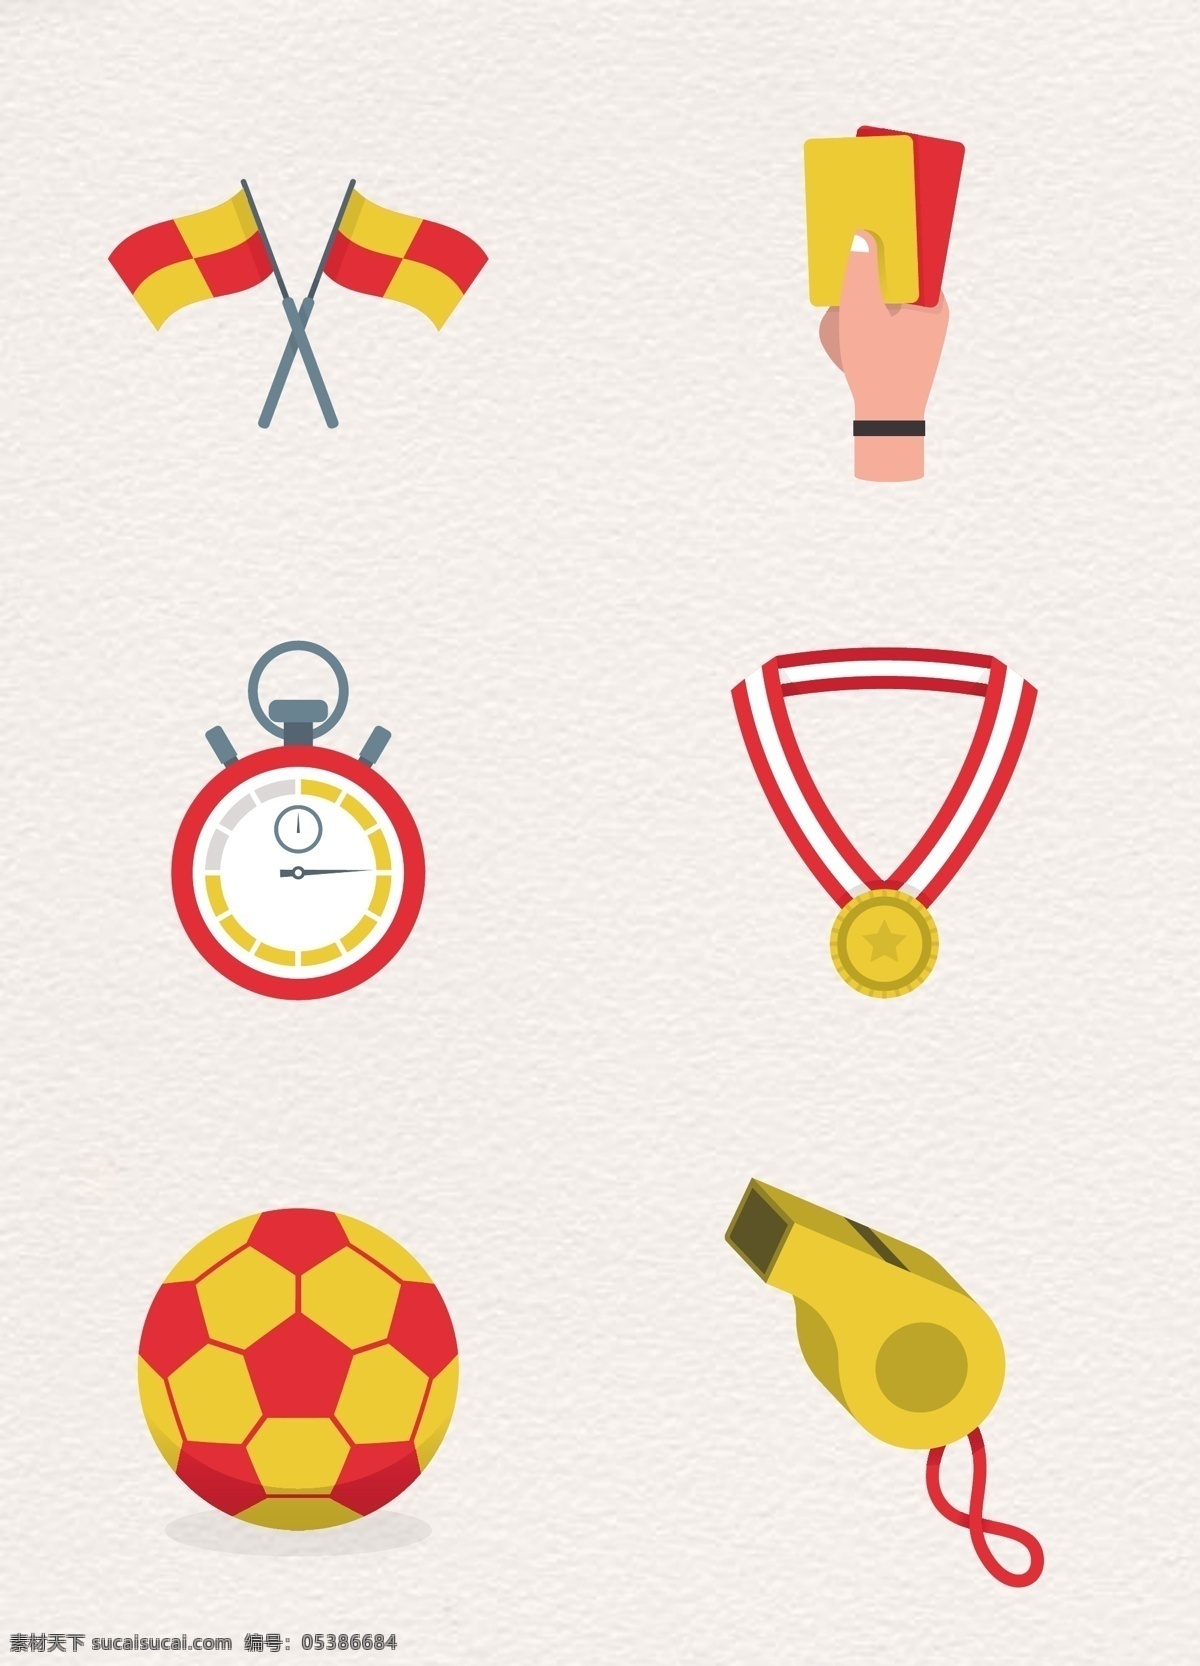 卡通 黄色 足球比赛 相关 用品 矢量 扁平化 旗子 奖牌 手绘 足球比赛素材 红牌黄牌 秒表 卡通足球 哨子 口哨